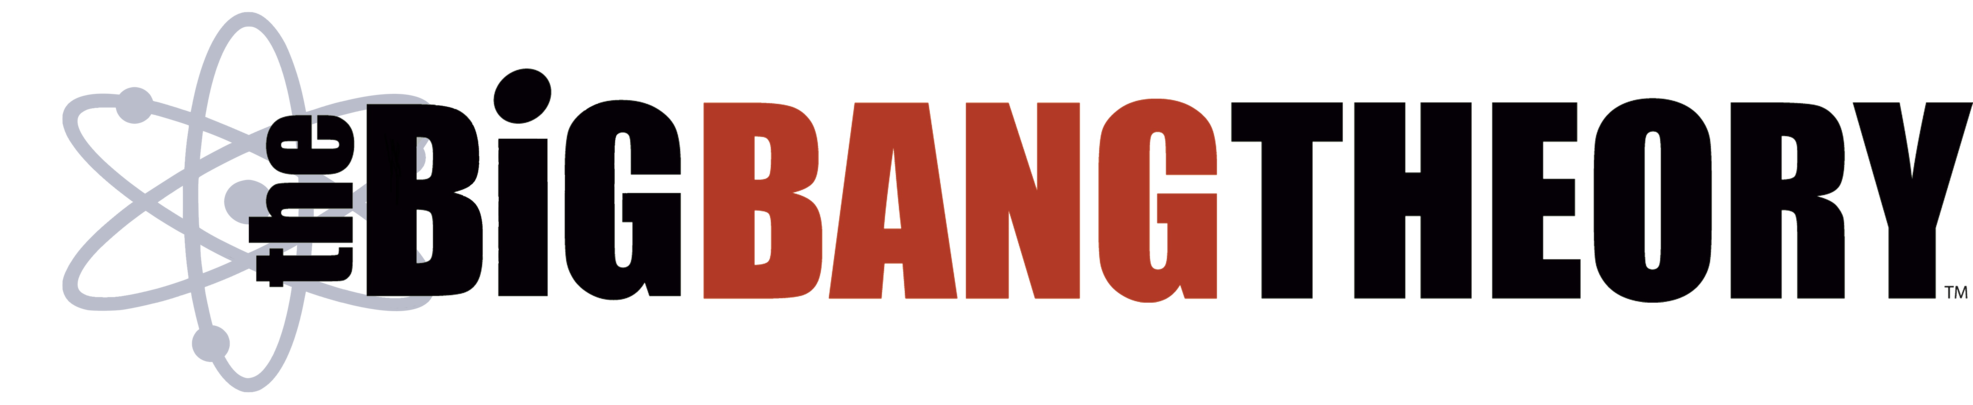 The Big Bang Theory Logo Png | vlr.eng.br